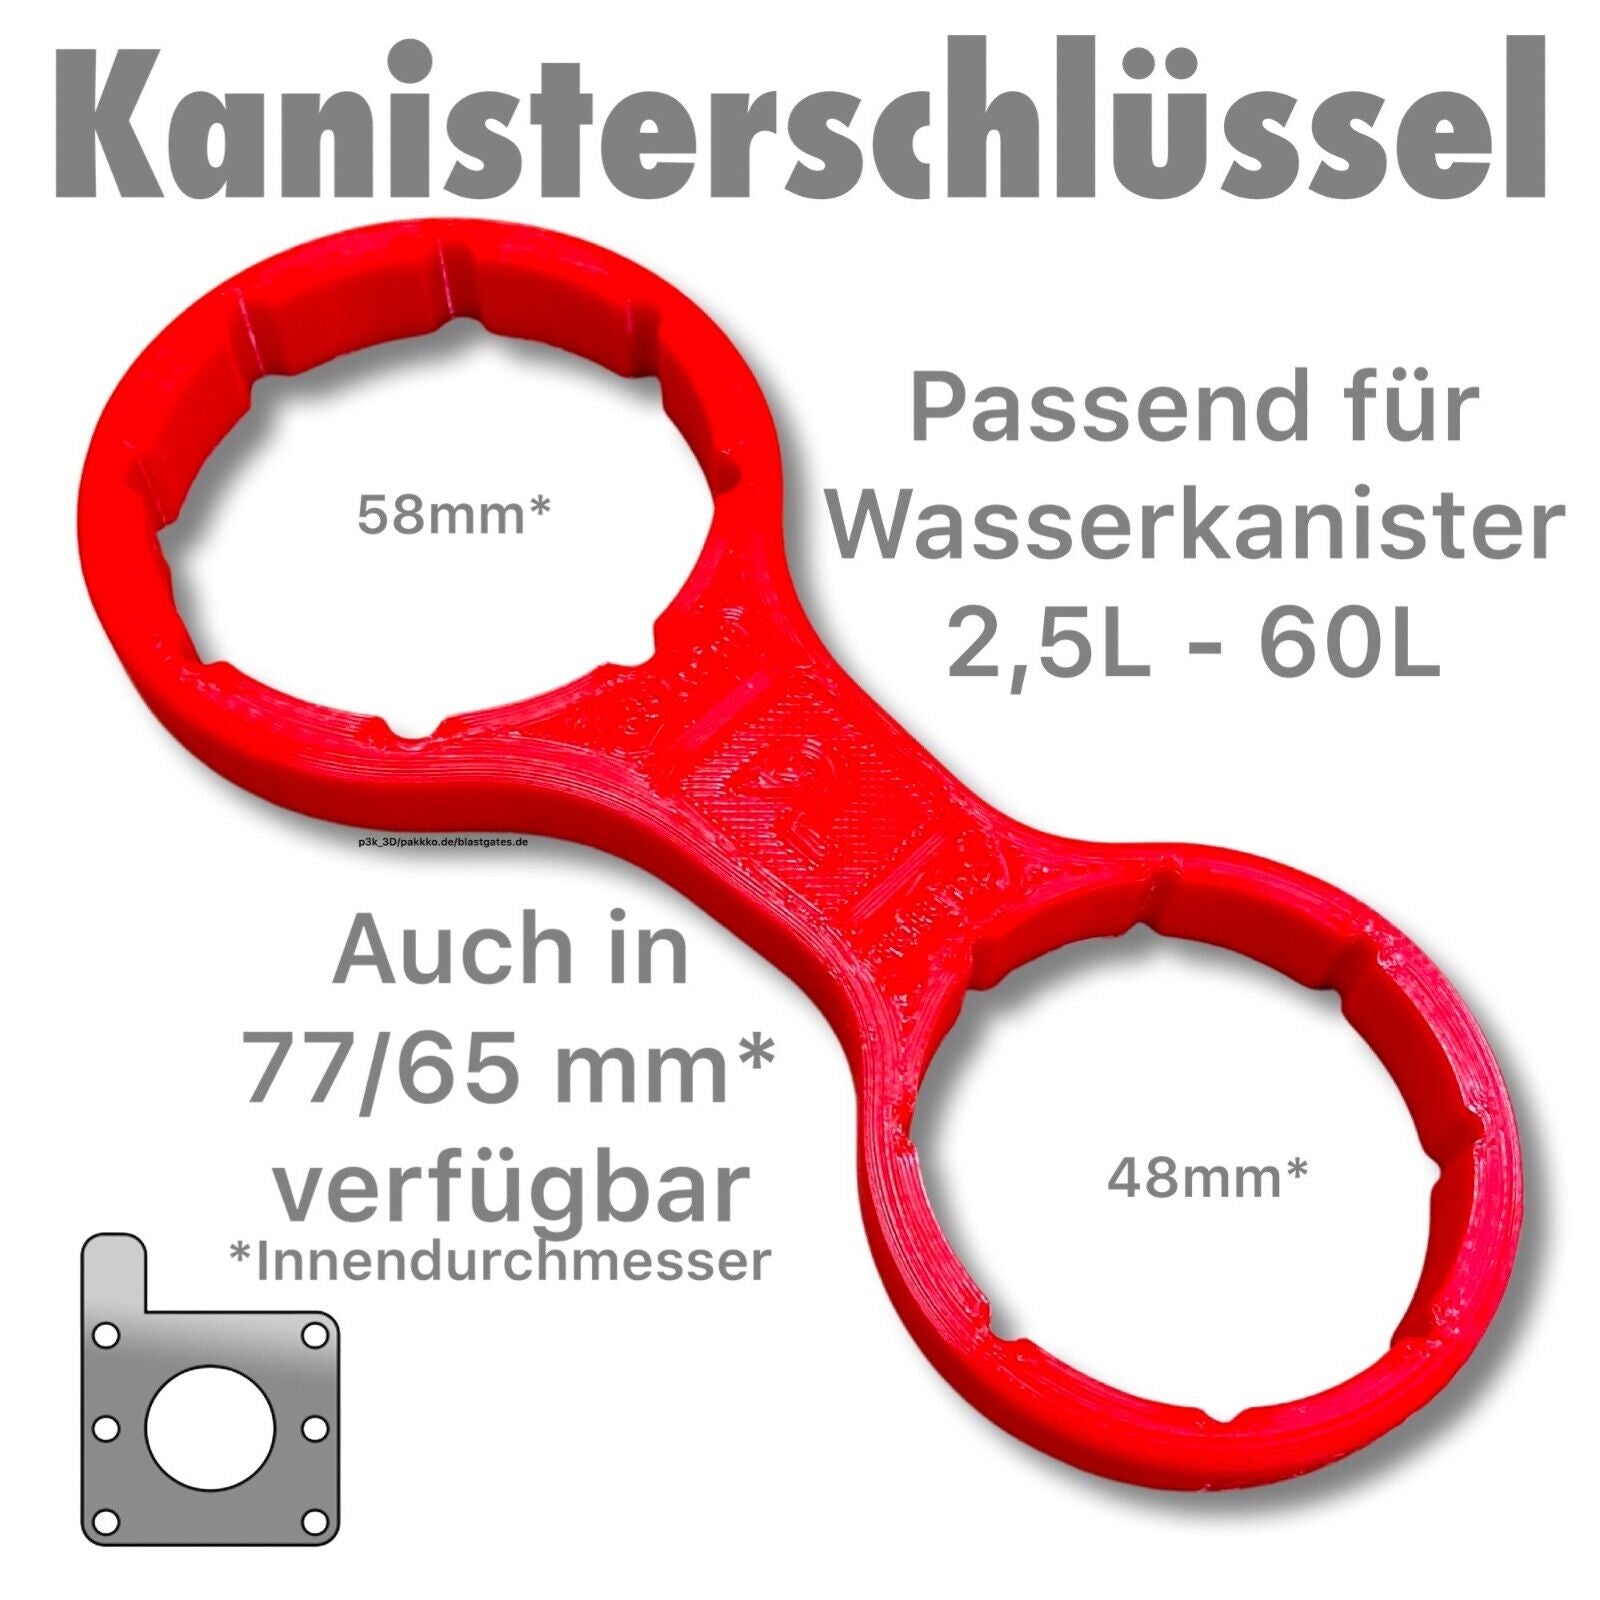 http://blastgates.de/cdn/shop/files/Kanisterschluessel-Wasserkanister_2.5-60L_1.jpg?v=1685120630